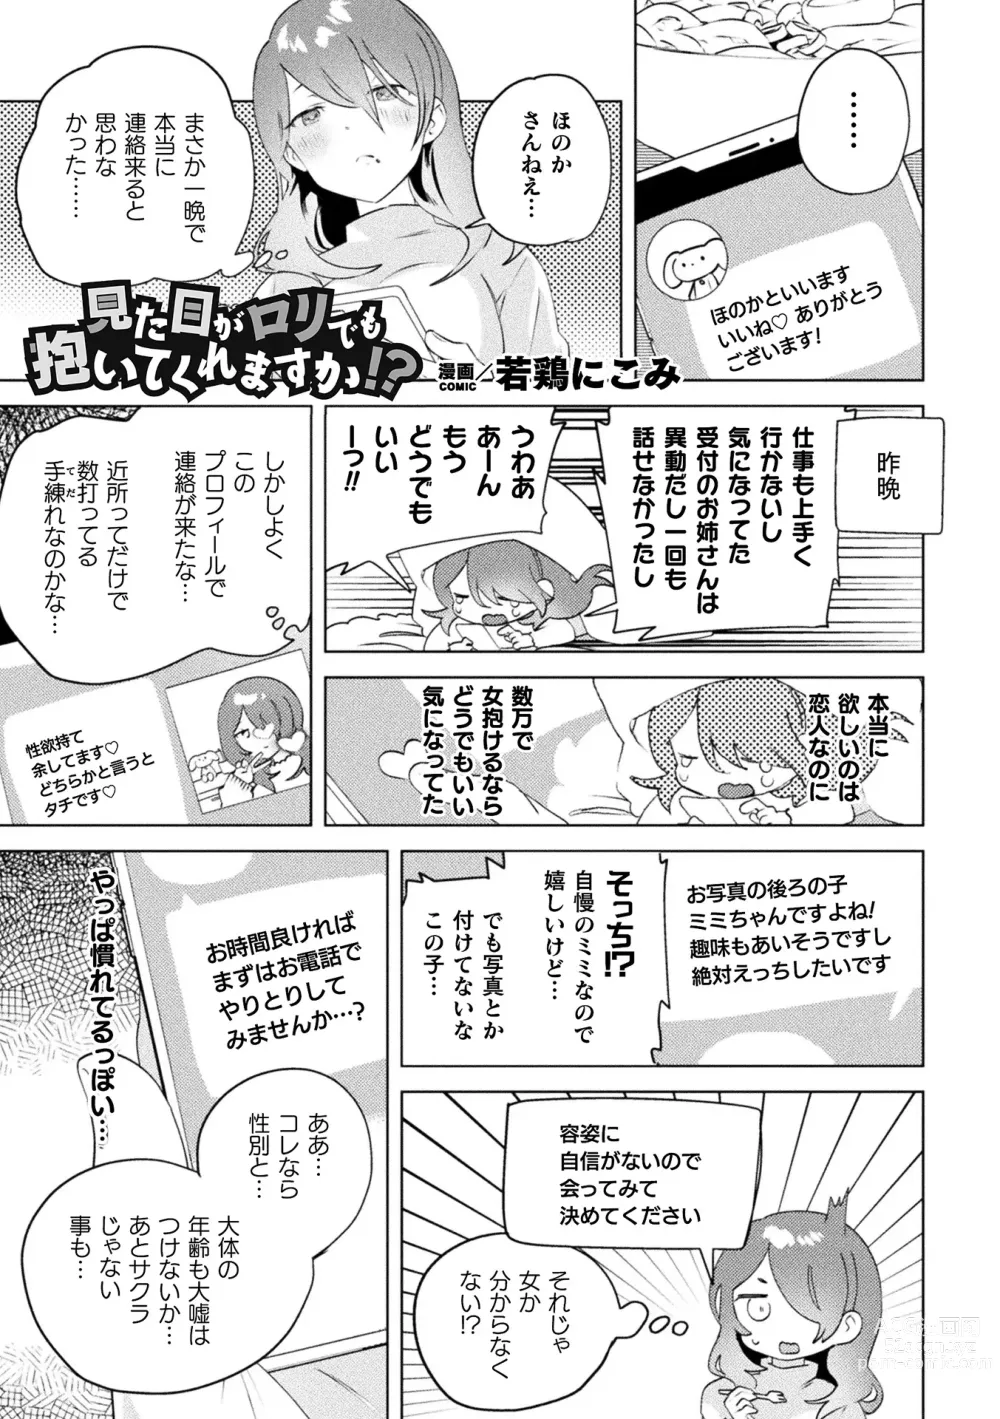 Page 3 of manga 2D Comic Magazine Mamakatsu Yuri Ecchi Vol. 3